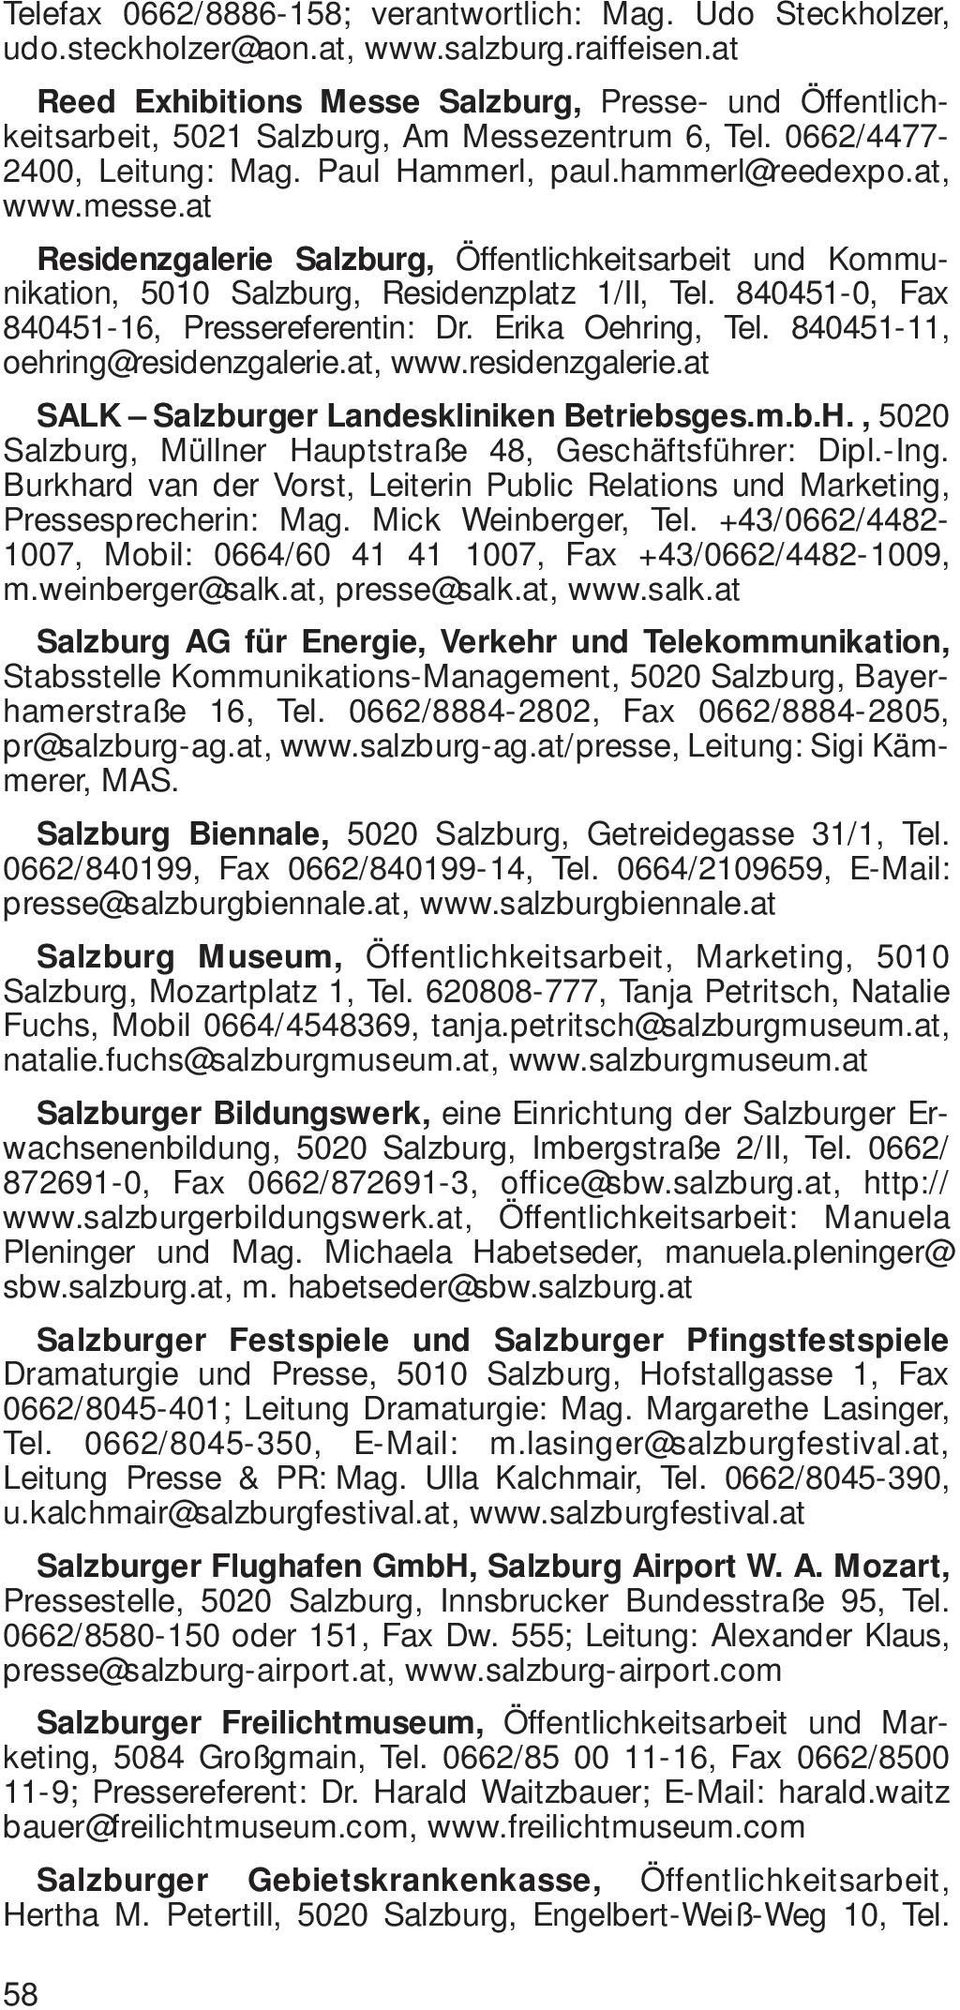 at Residenzgalerie Salzburg, Öffentlichkeitsarbeit und Kommunikation, 5010 Salzburg, Residenzplatz 1/II, Tel. 840451-0, Fax 840451-16, Pressereferentin: Dr. Erika Oehring, Tel.